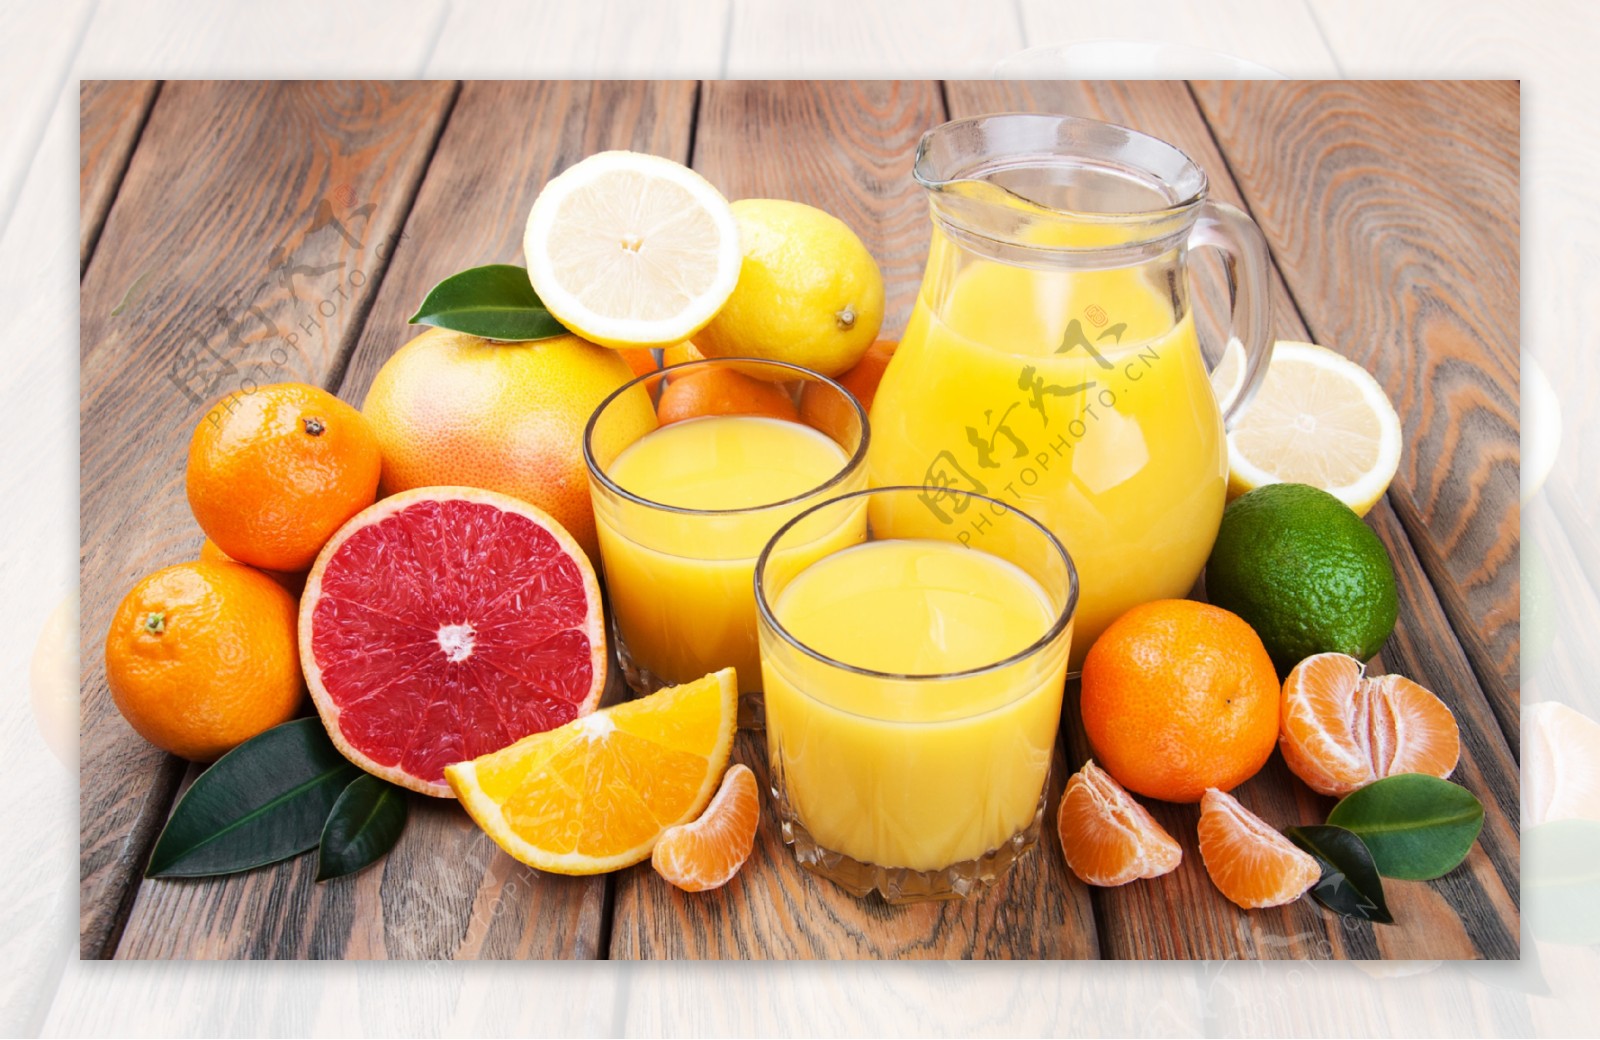 鲜榨橙汁图片下载 - 觅知网